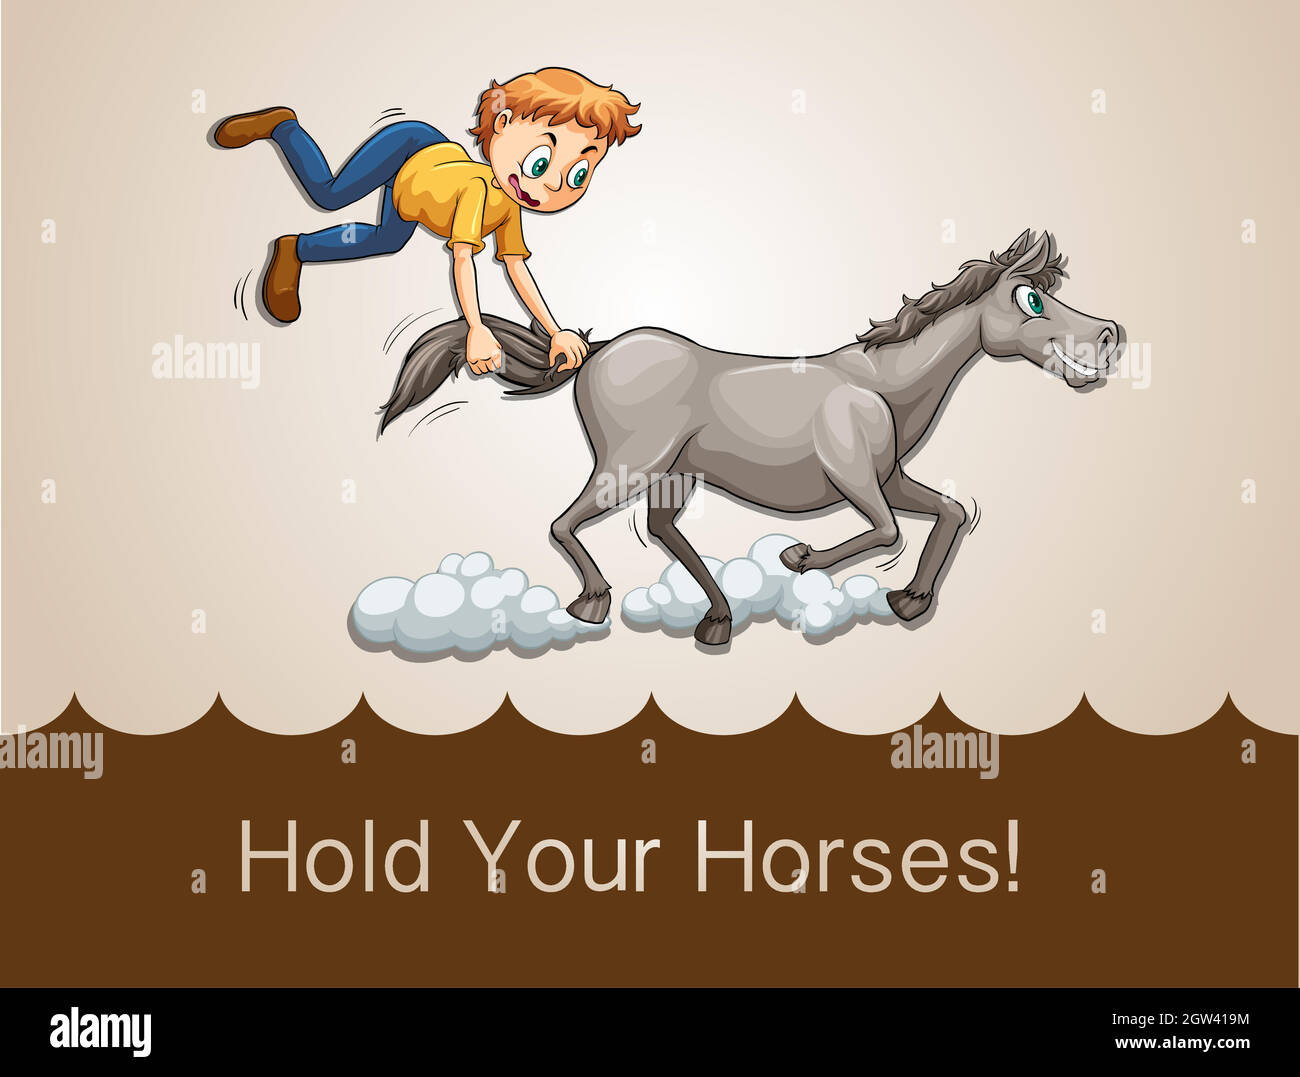 Hear hear идиома. Hold your Horses идиома. Идиомы с лошадьми. Упрямая лошадь. Идиома придержи коней.